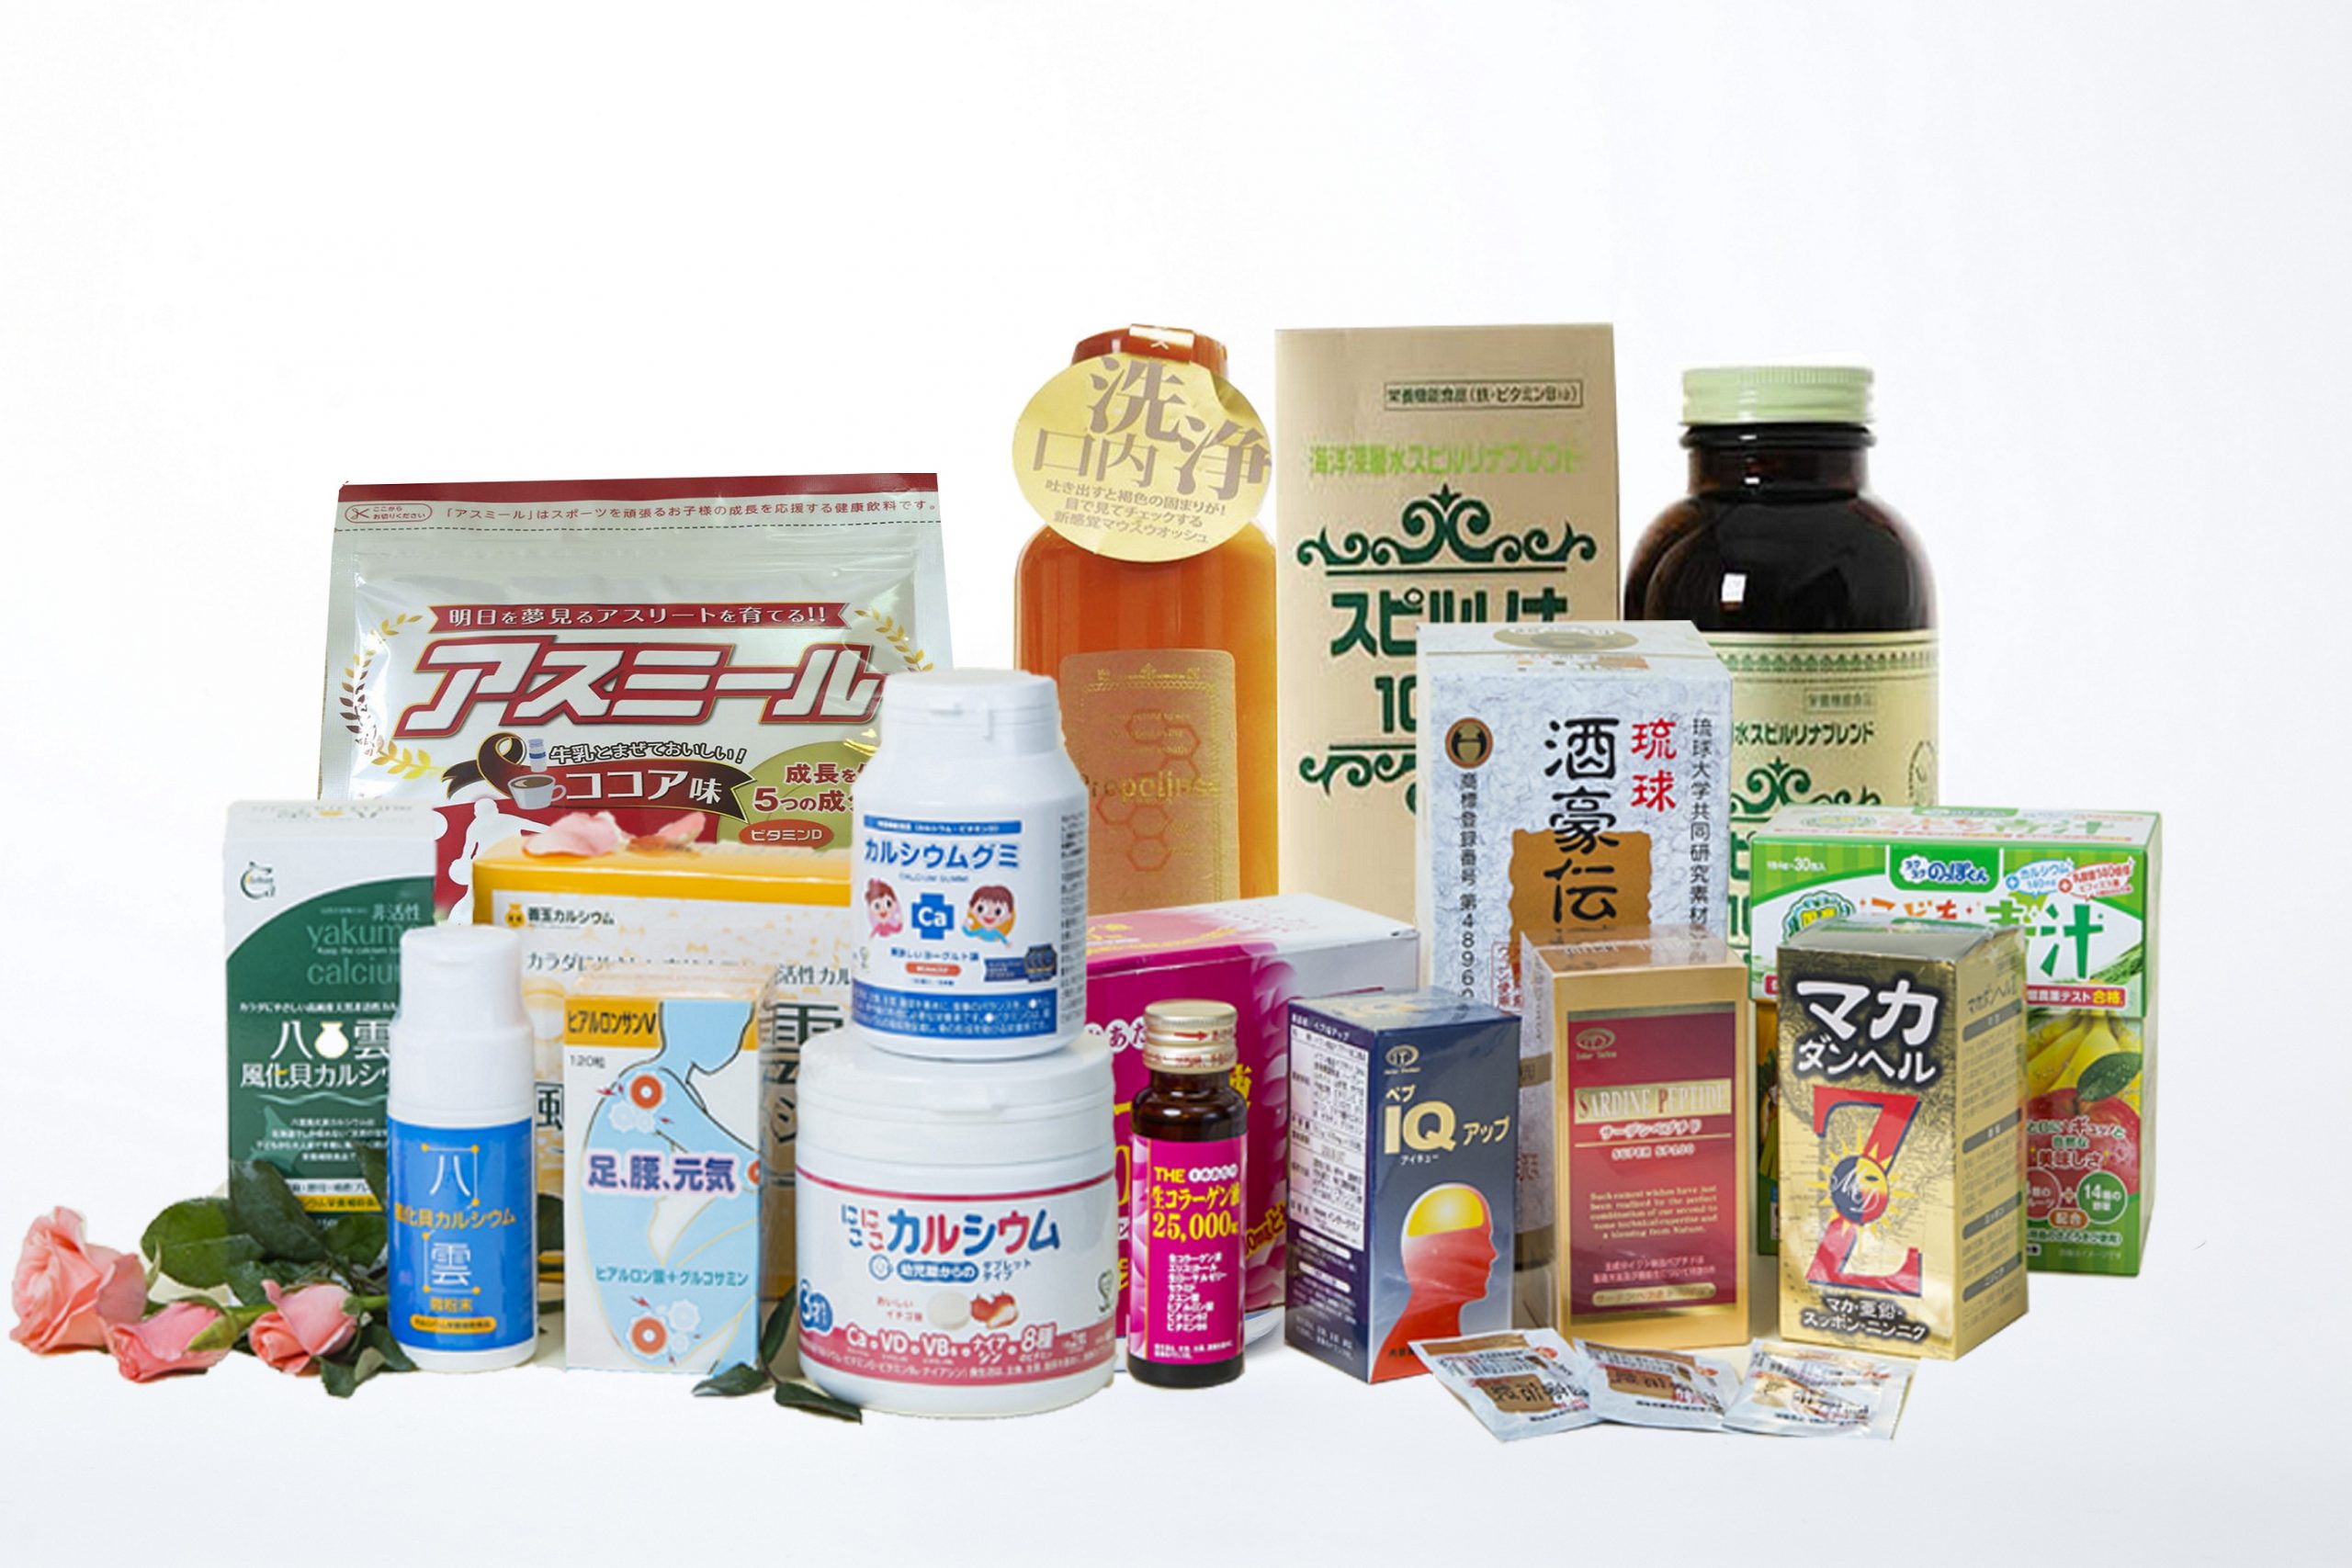 Order thực phẩm chức năng từ Nhật về Bình Dương giá rẻ, chất lượng